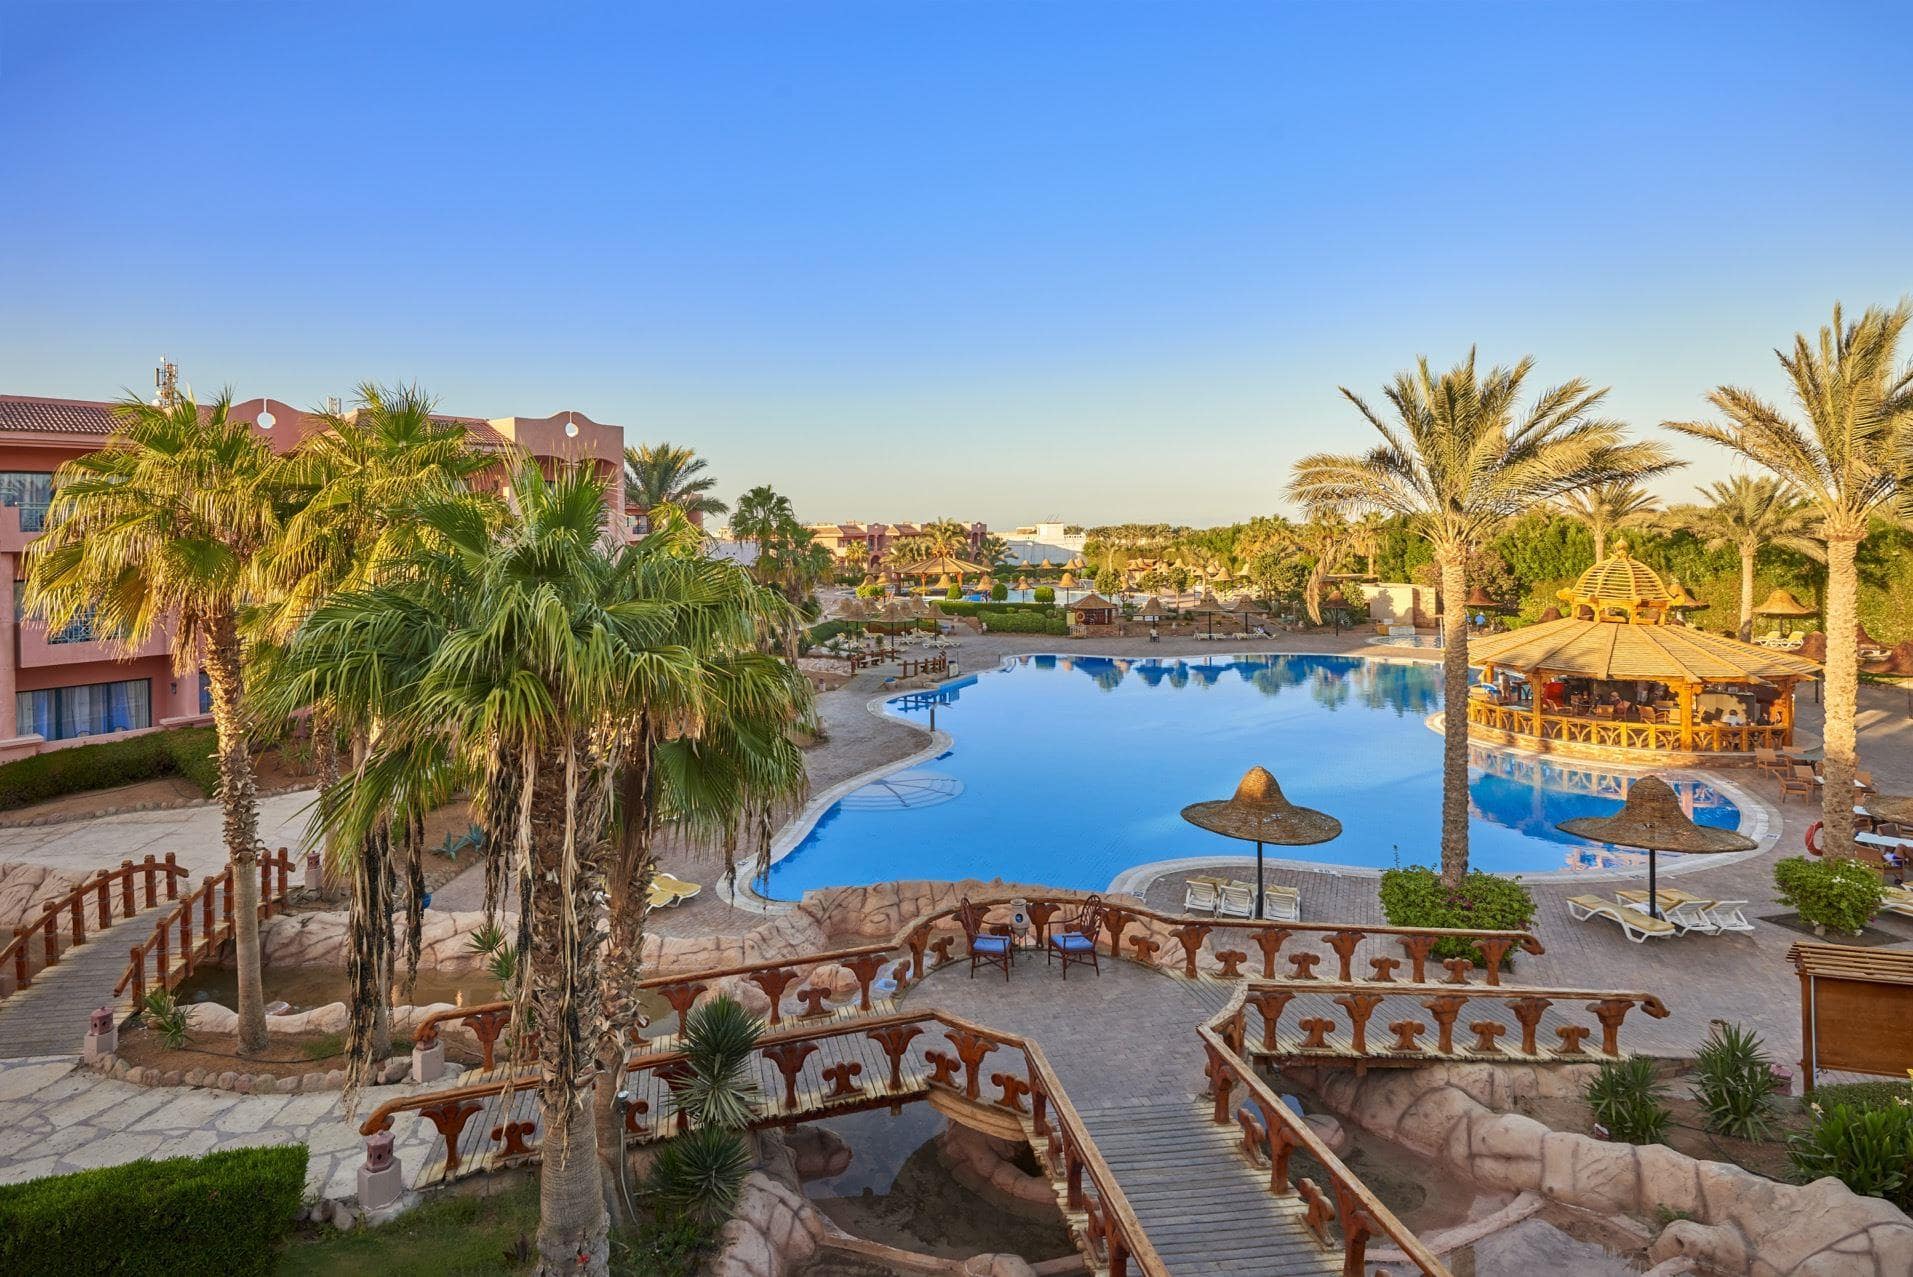 Parrotel Aqua Park Resort, Sharm El Sheikh